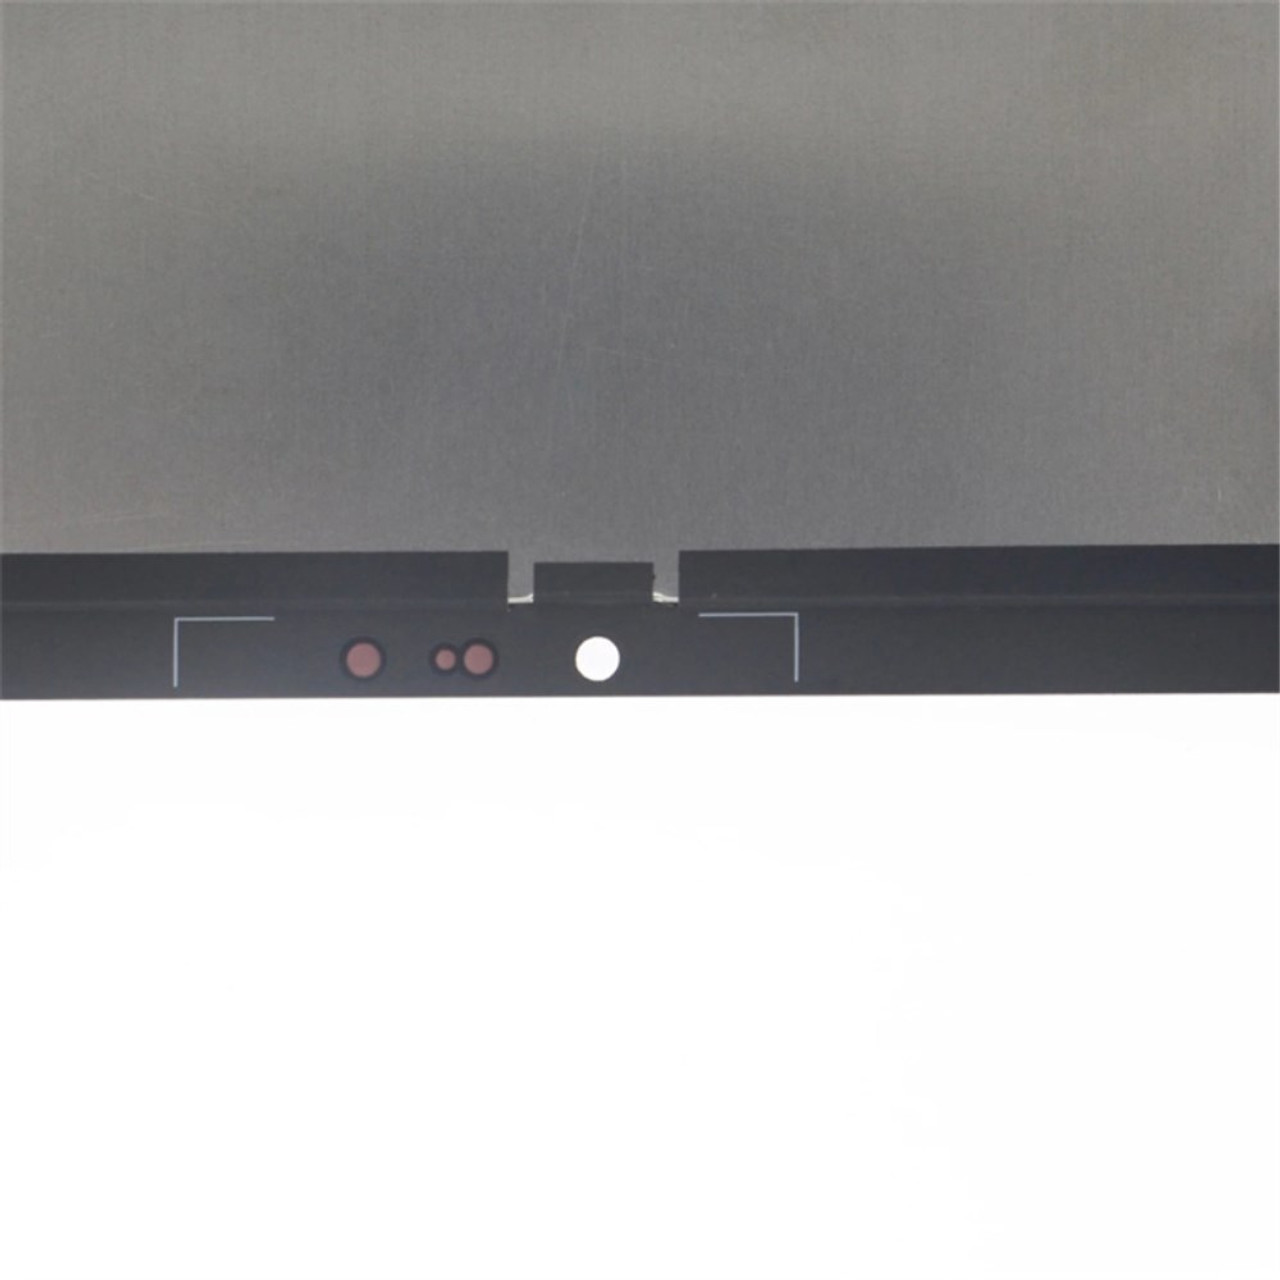 New LCD Screen Display For Lenovo Tab P11 / P11 Plus TB-J606F TB